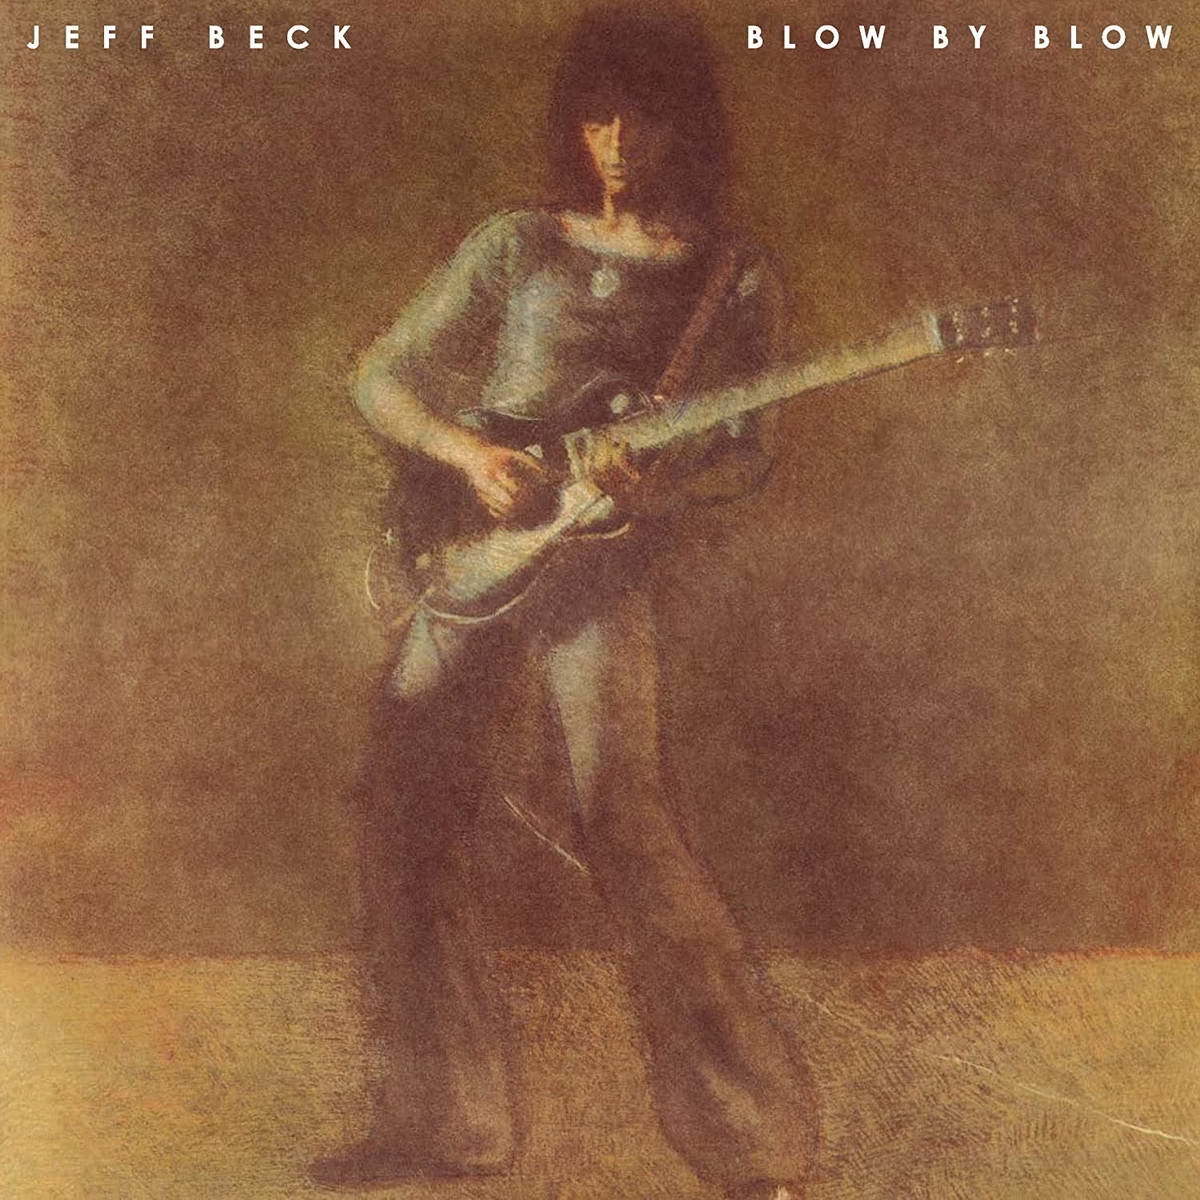 Виниловая пластинка Beck, Jeff, Blow By Blow (0886977455513) виниловая пластинка jeff beck blow by blow lp